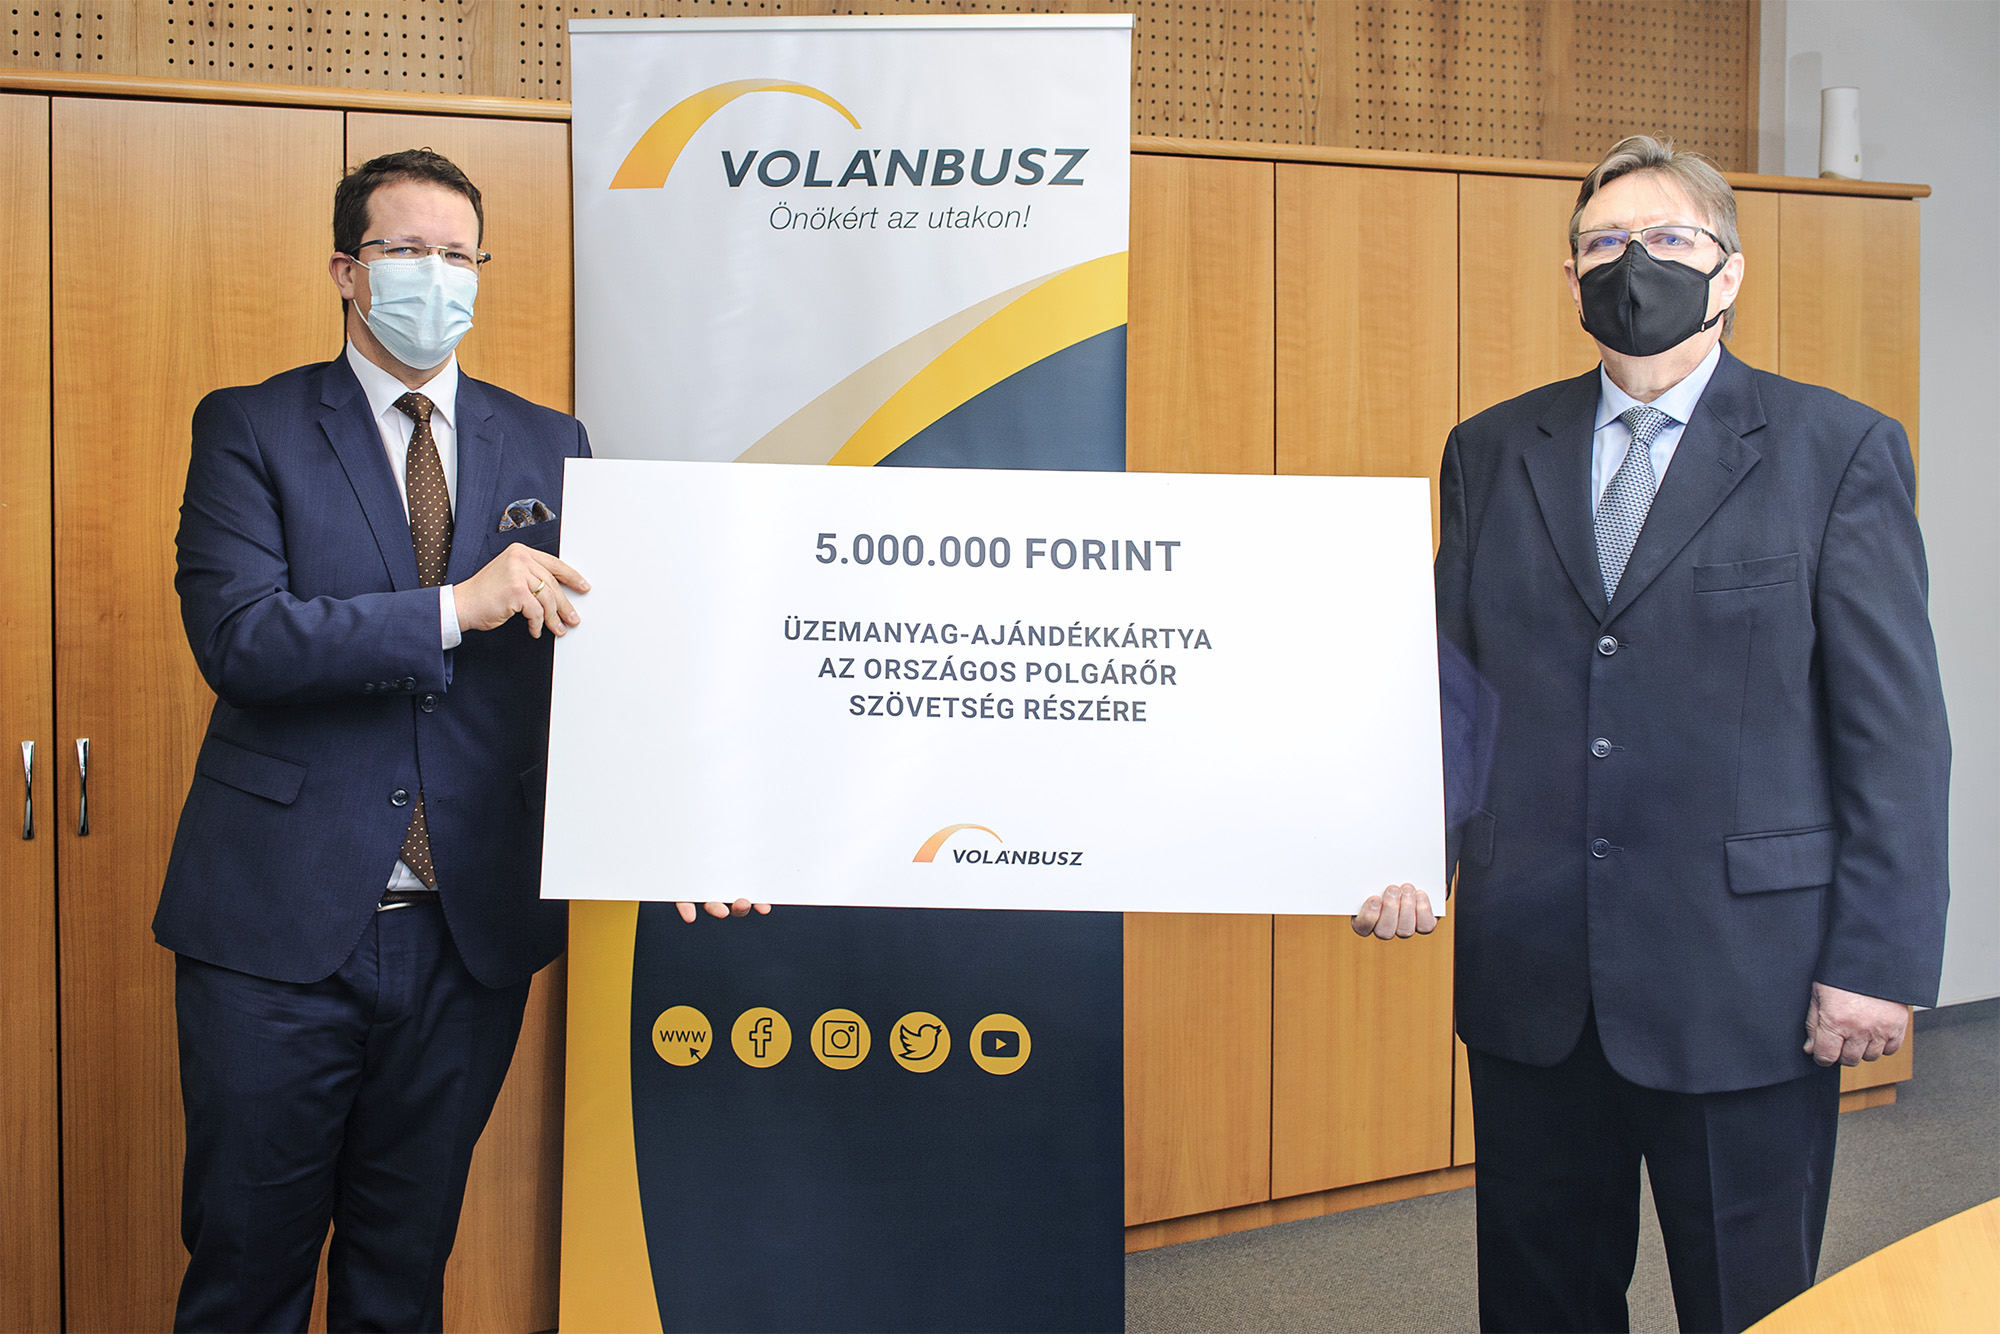 Dr. Pafféri Zoltán átadja üzemanyag-ajándékkártyát az Országos Polgárőr Szövetségnek